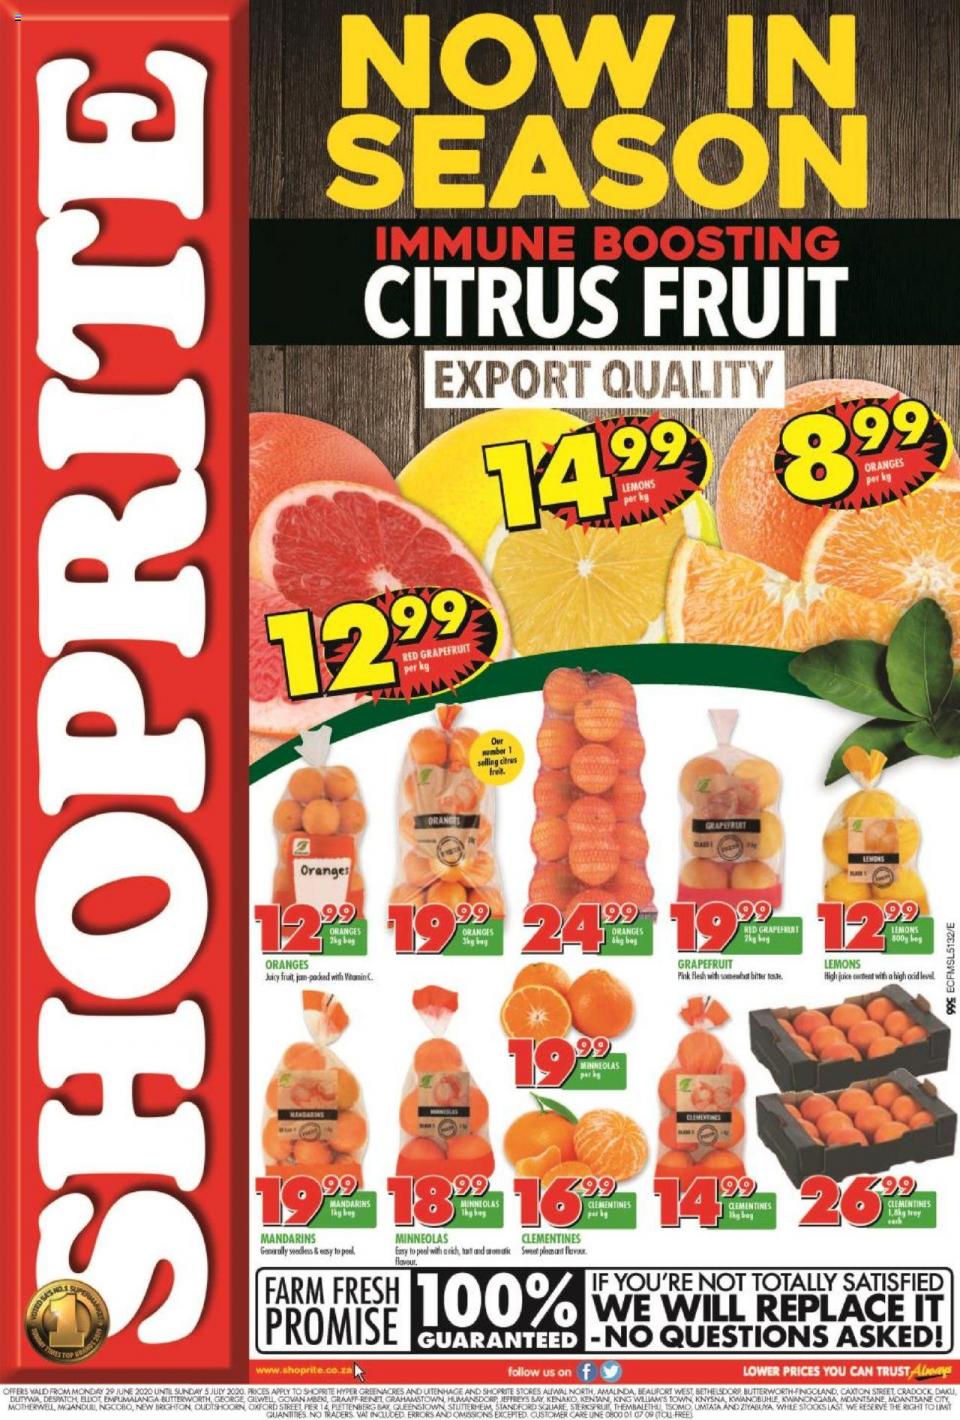 shoprite specials citrus fruit promotion 29 june 2020 eastern cape